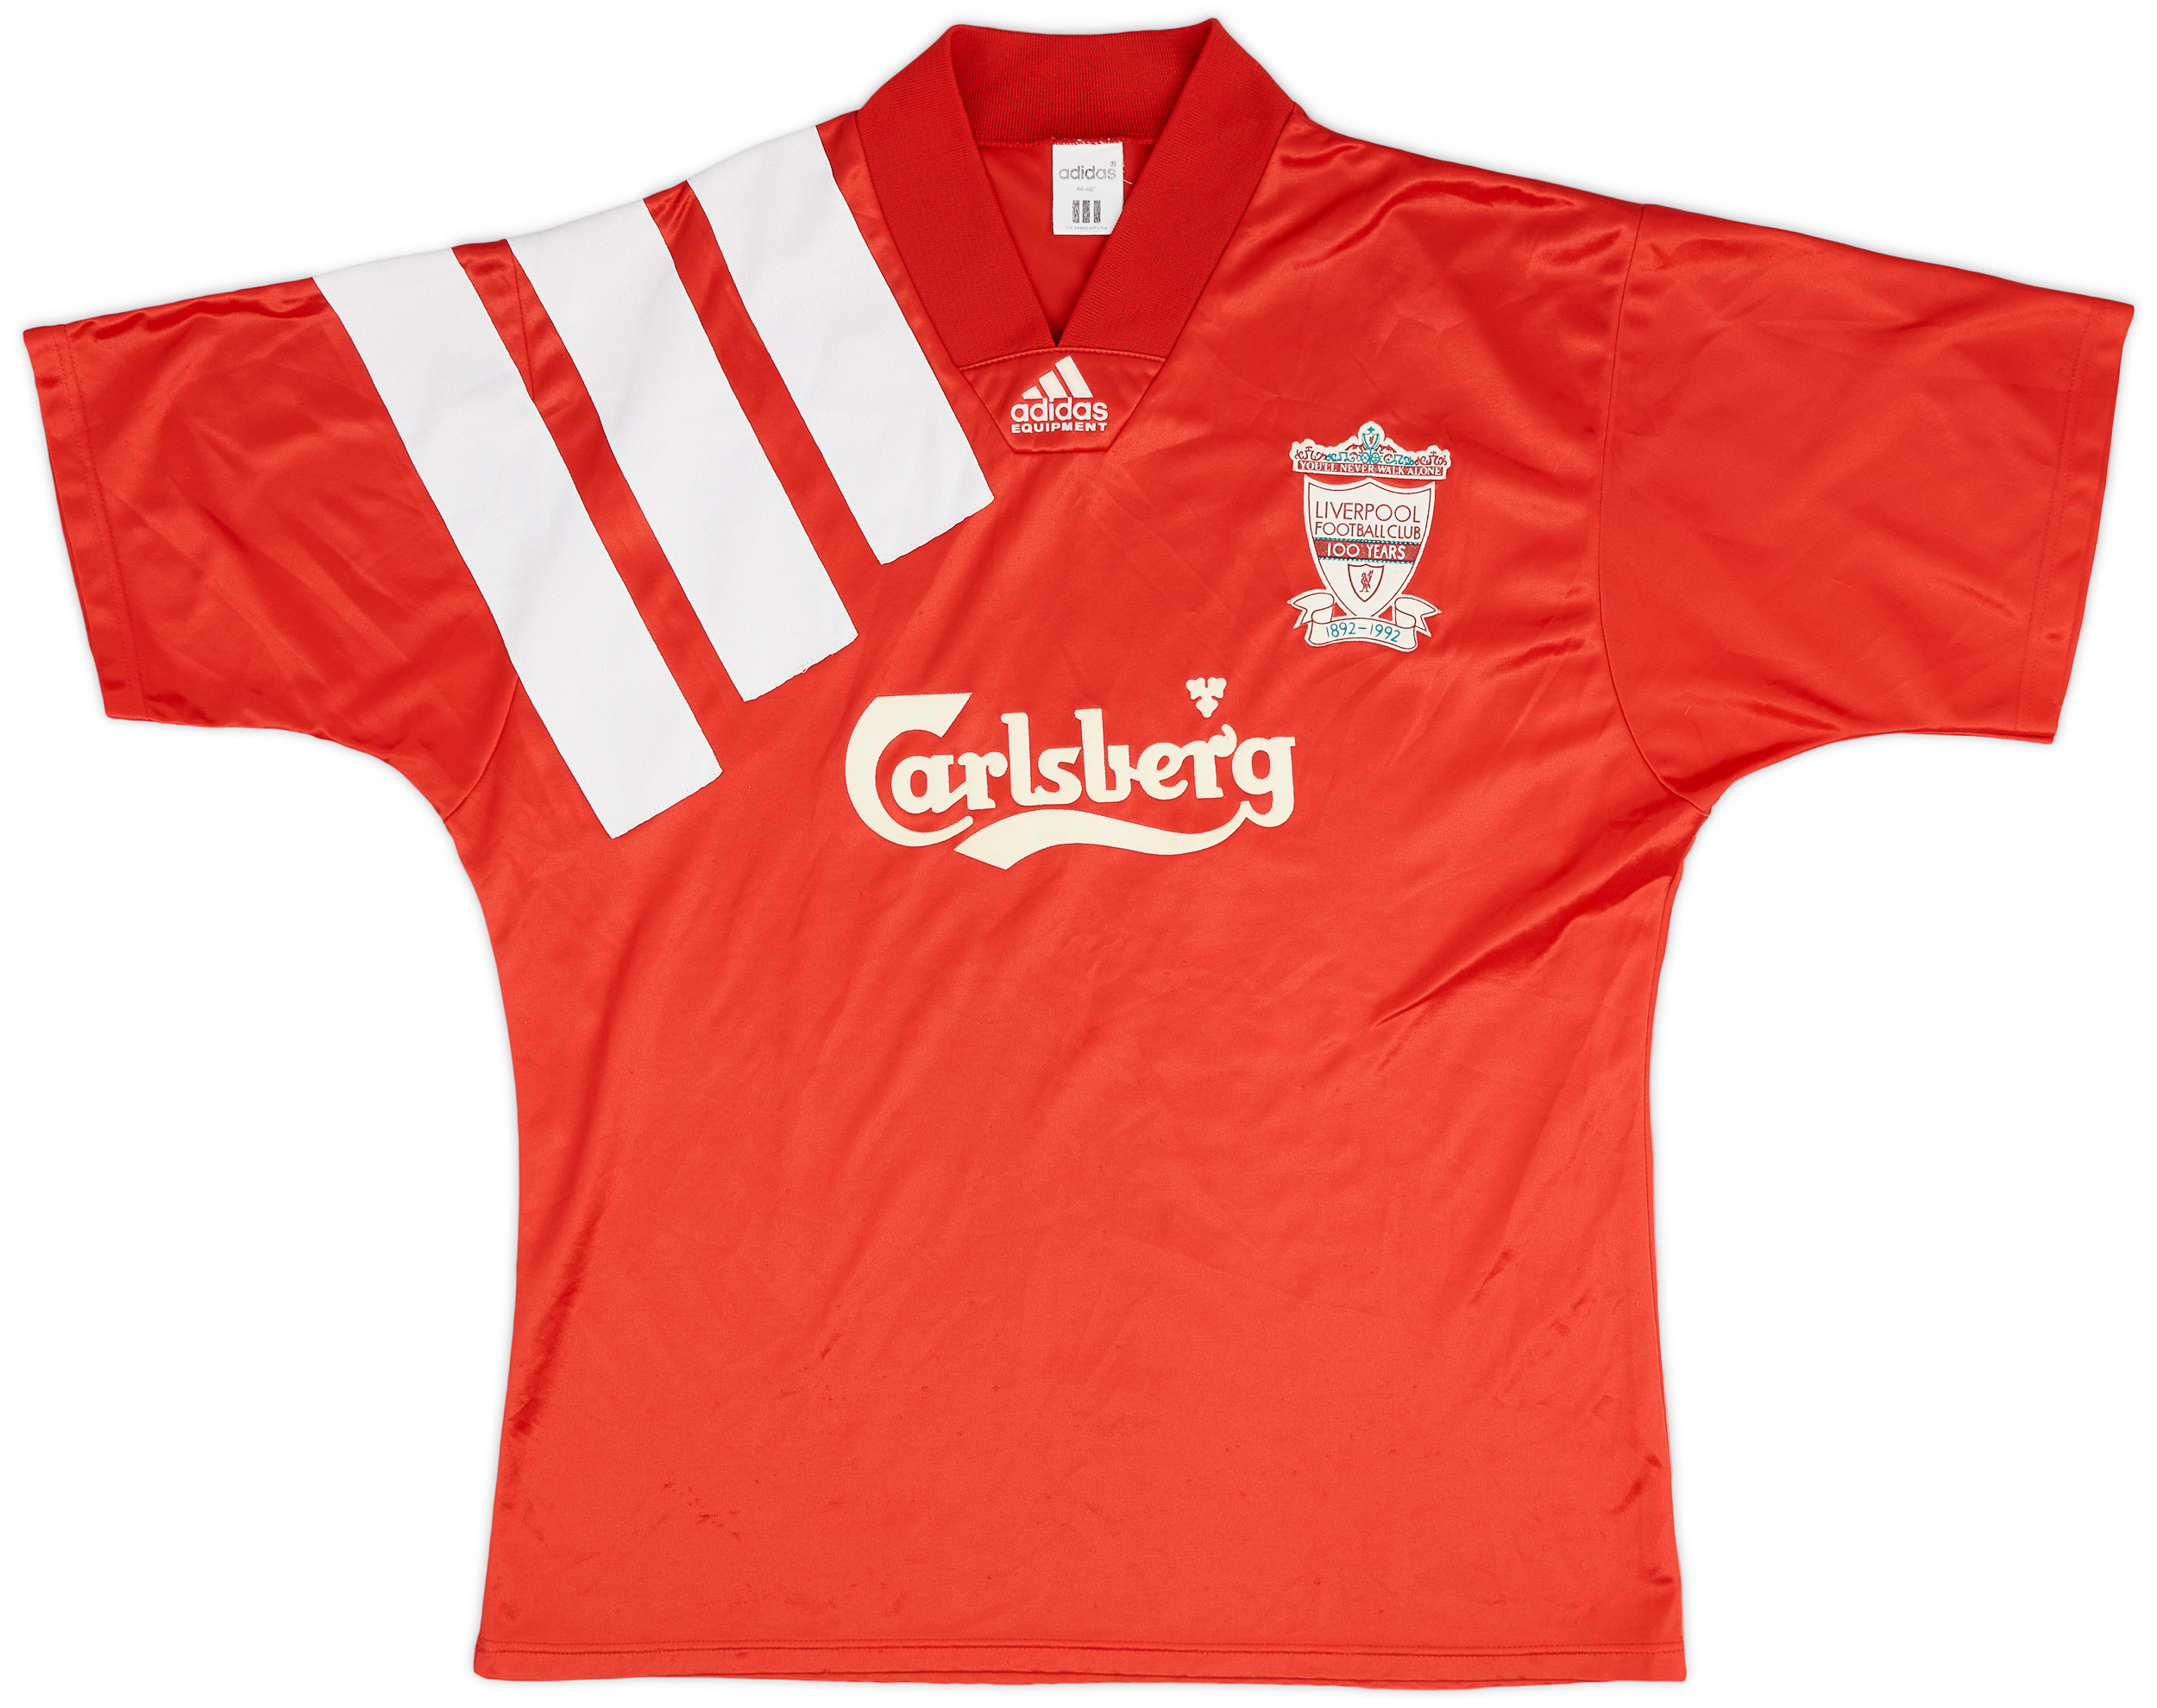 1992-93 Liverpool Centenary Home Shirt - 8/10 - (/)